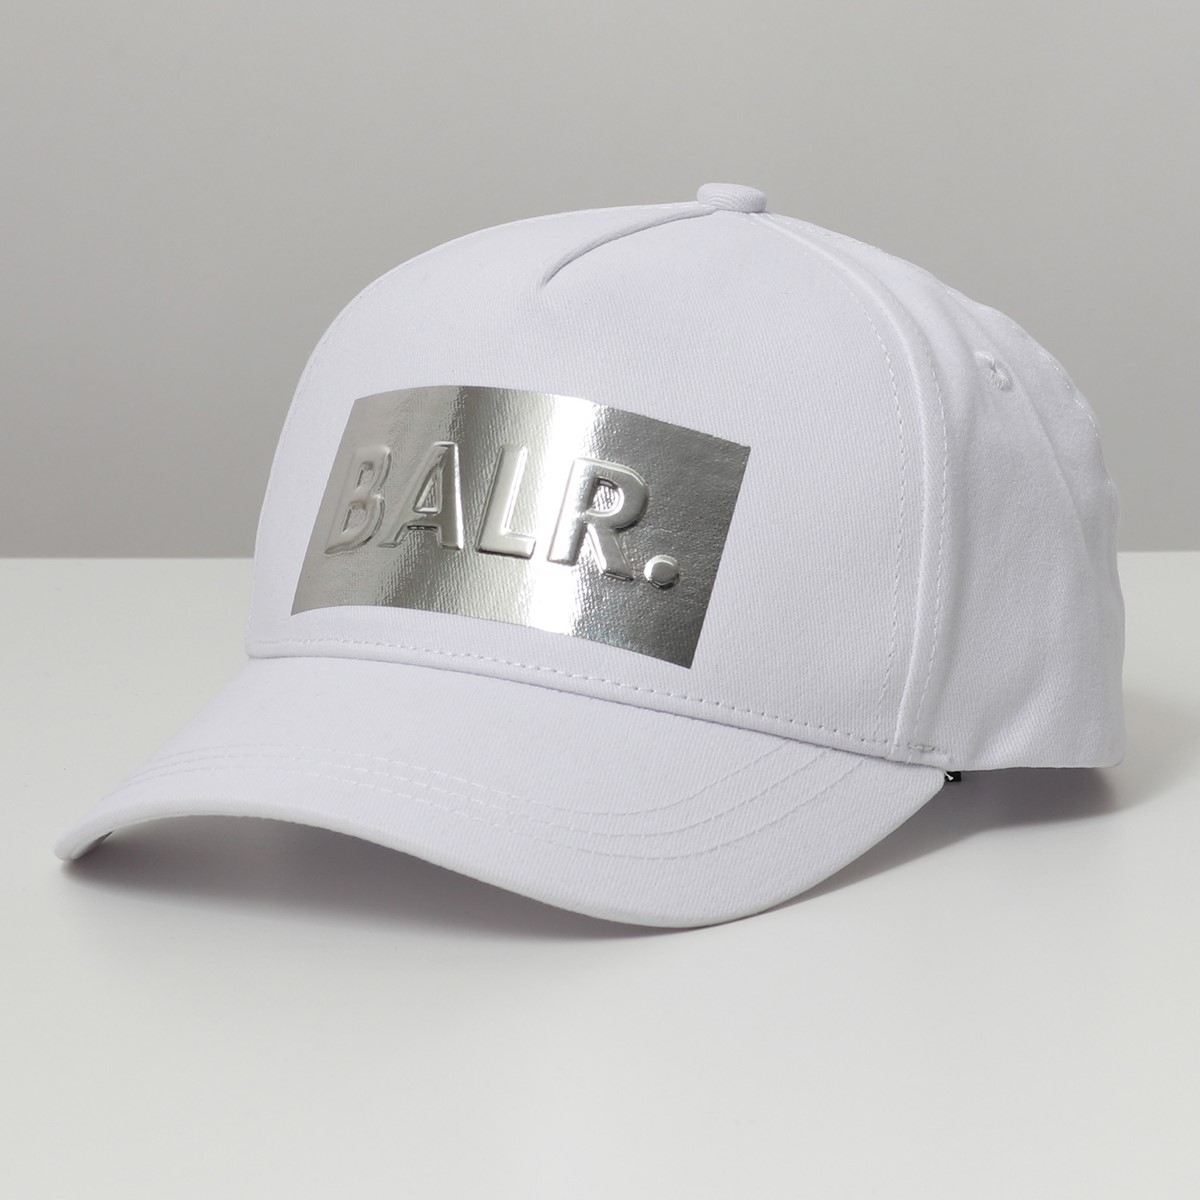 楽天市場 Balr ボーラー B Silver Club Cap カラー2色 ベースボールキャップ 帽子 メンズ インポートセレクト Musee